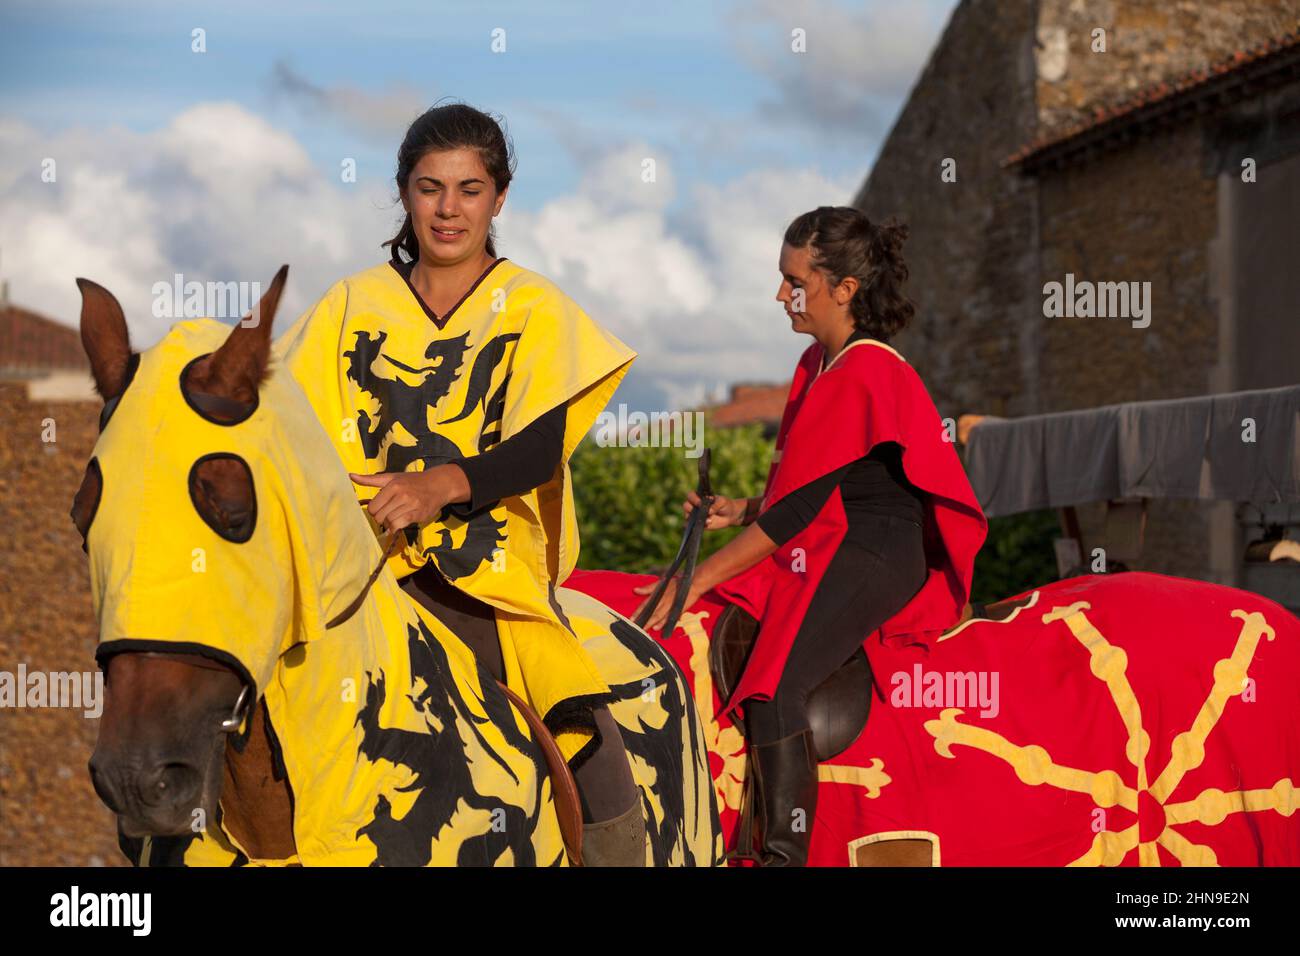 Bazoges-en-Pareds, France - juillet 29 2017 : couple de chevaliers féminins sur leurs chevaux lors du festival annuel Nocturnes Medievale. Banque D'Images